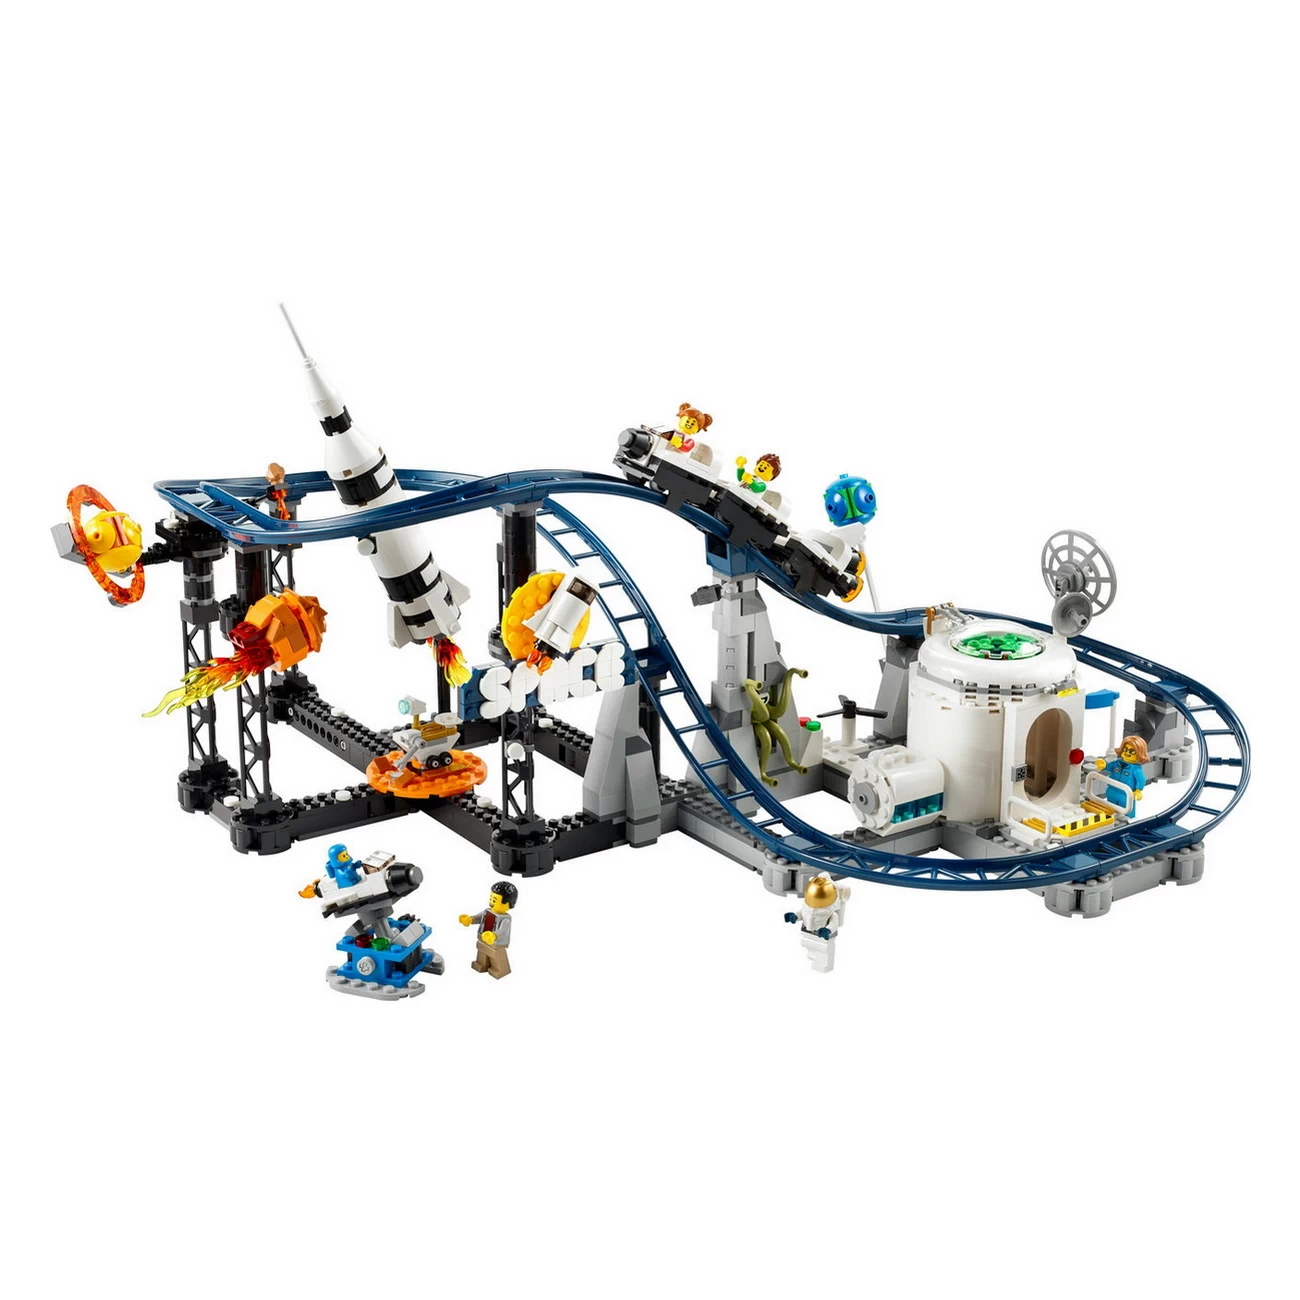 LEGO Creator 31142 - Weltraum-Achterbahn